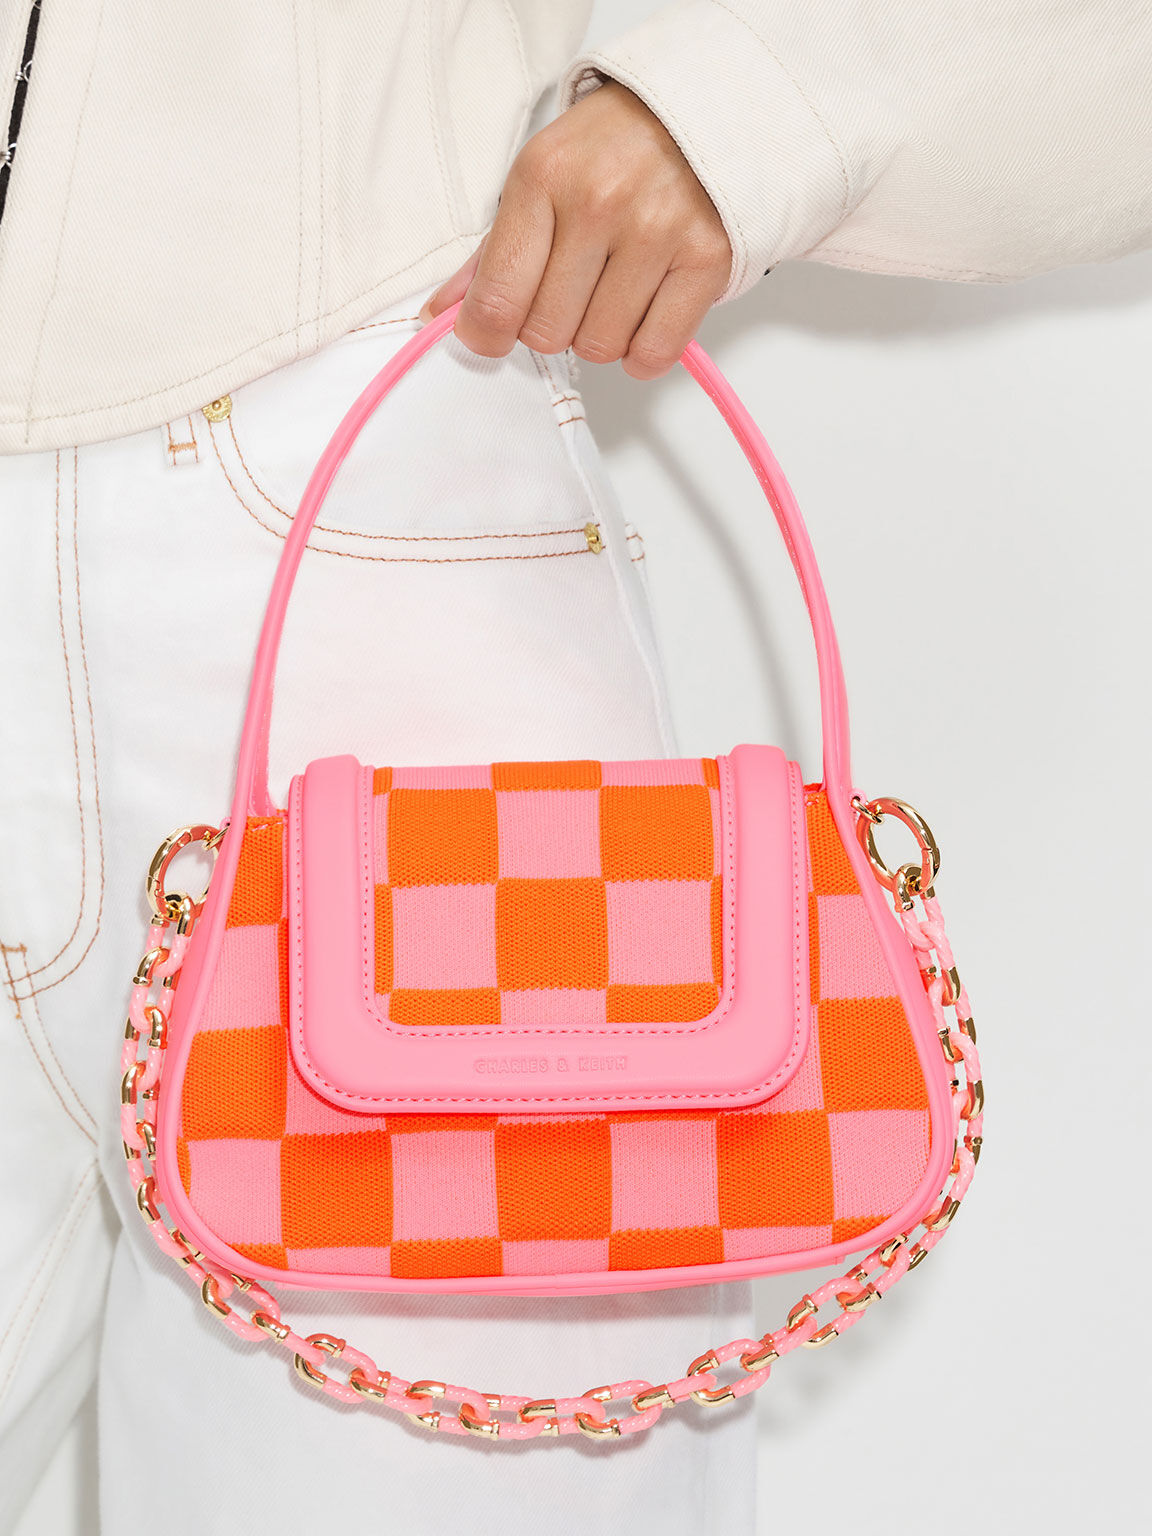 Shiloh 格紋手提包, 粉紅色, hi-res